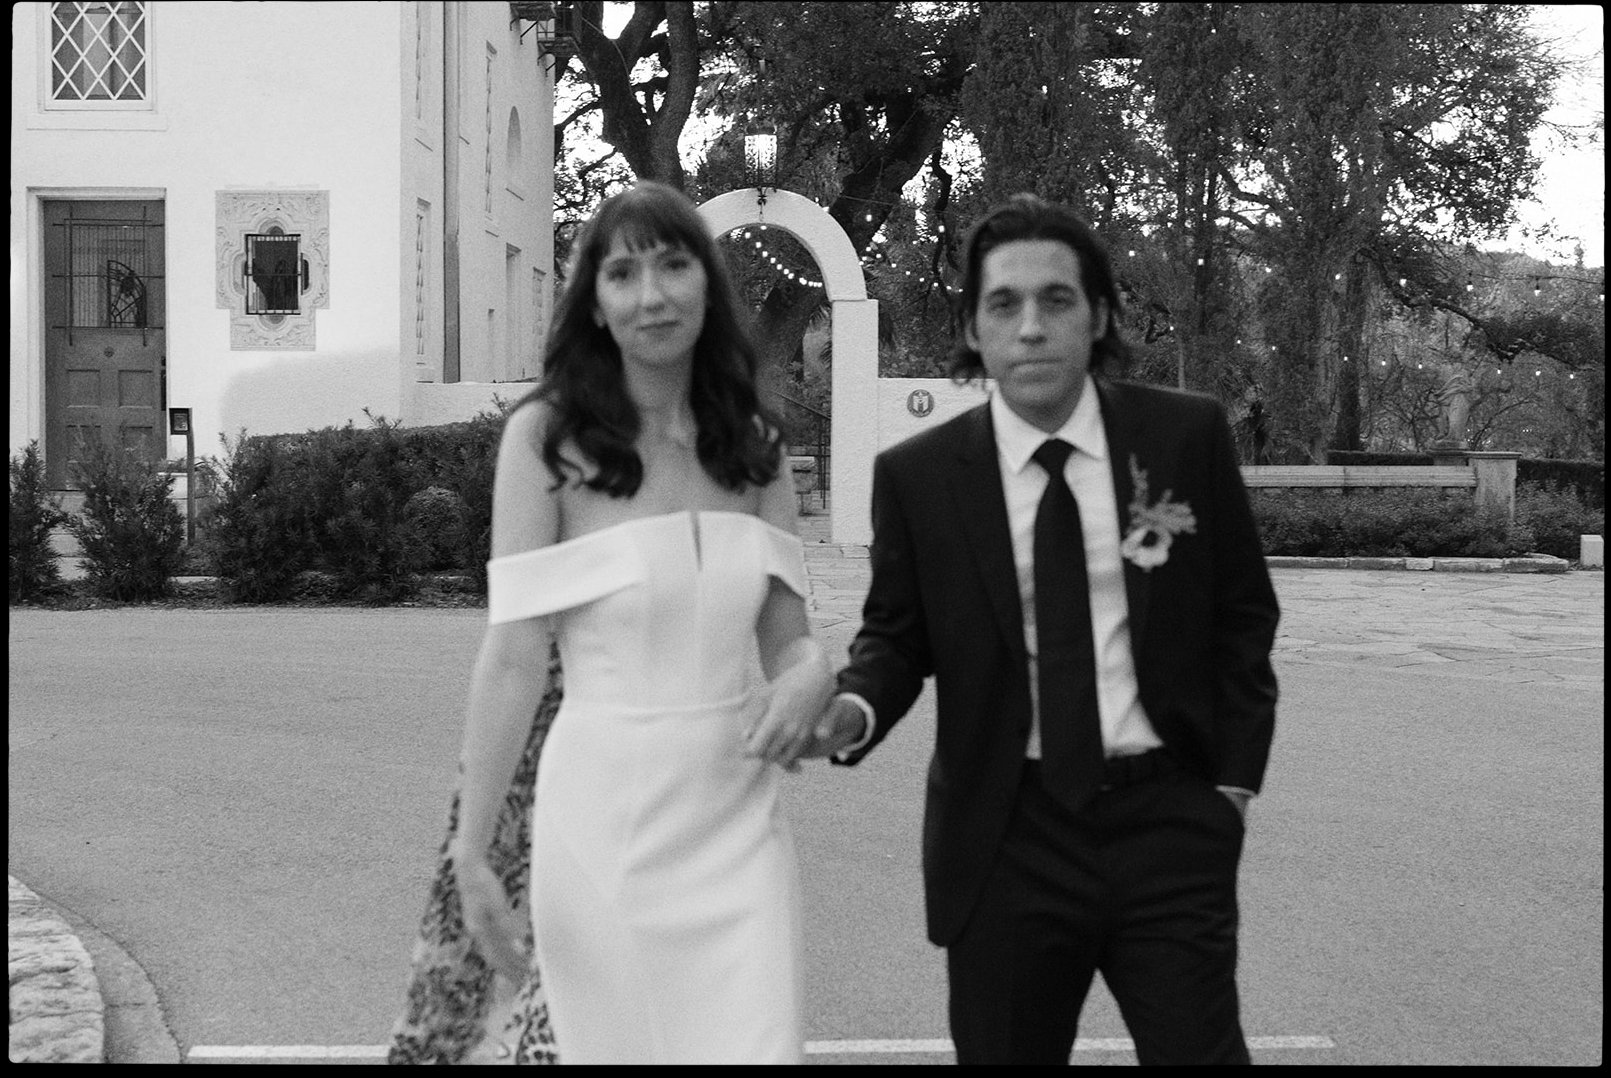 Best-Austin-Wedding-Photographers-Elopement-Film-35mm-Asheville-Santa-Barbara-Laguna-Gloria-92.jpg